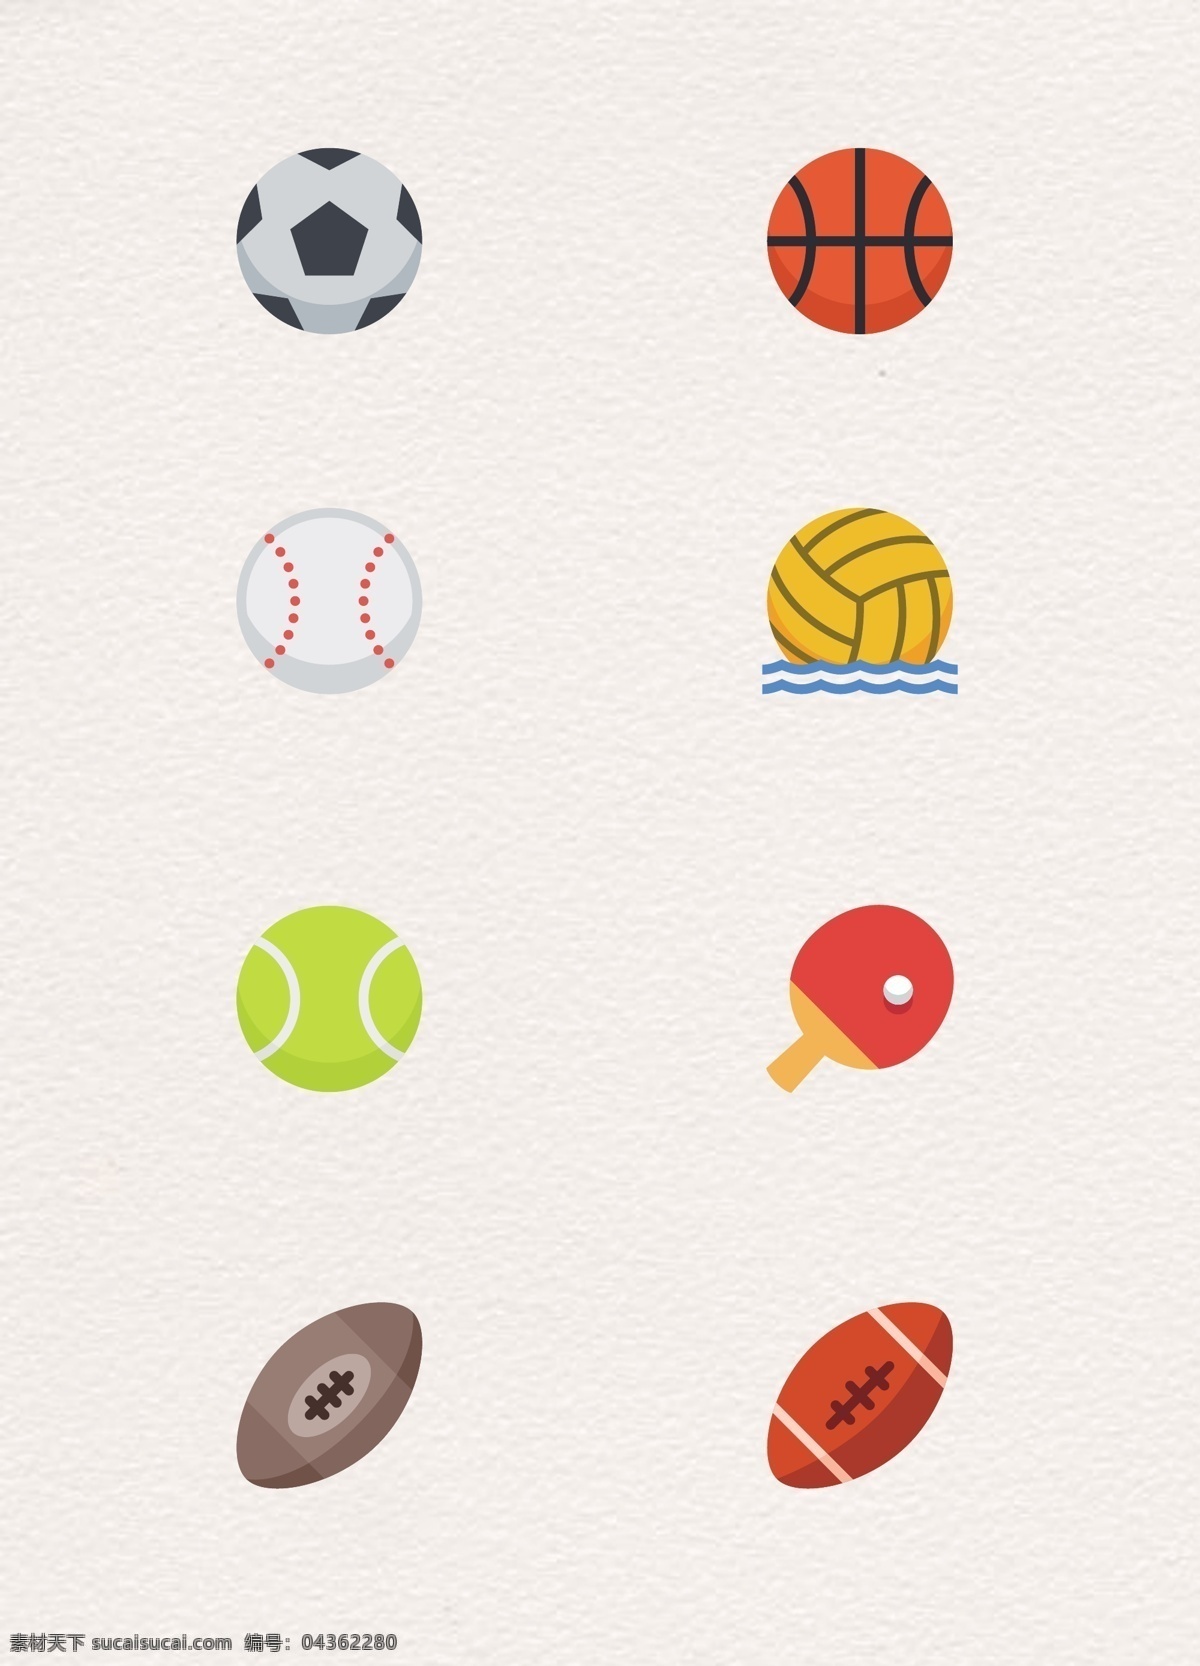 组 卡通 可爱 体育运动 器材 图标 足球 篮球 乒乓球 运动器材 图标设计 网球 橄榄球